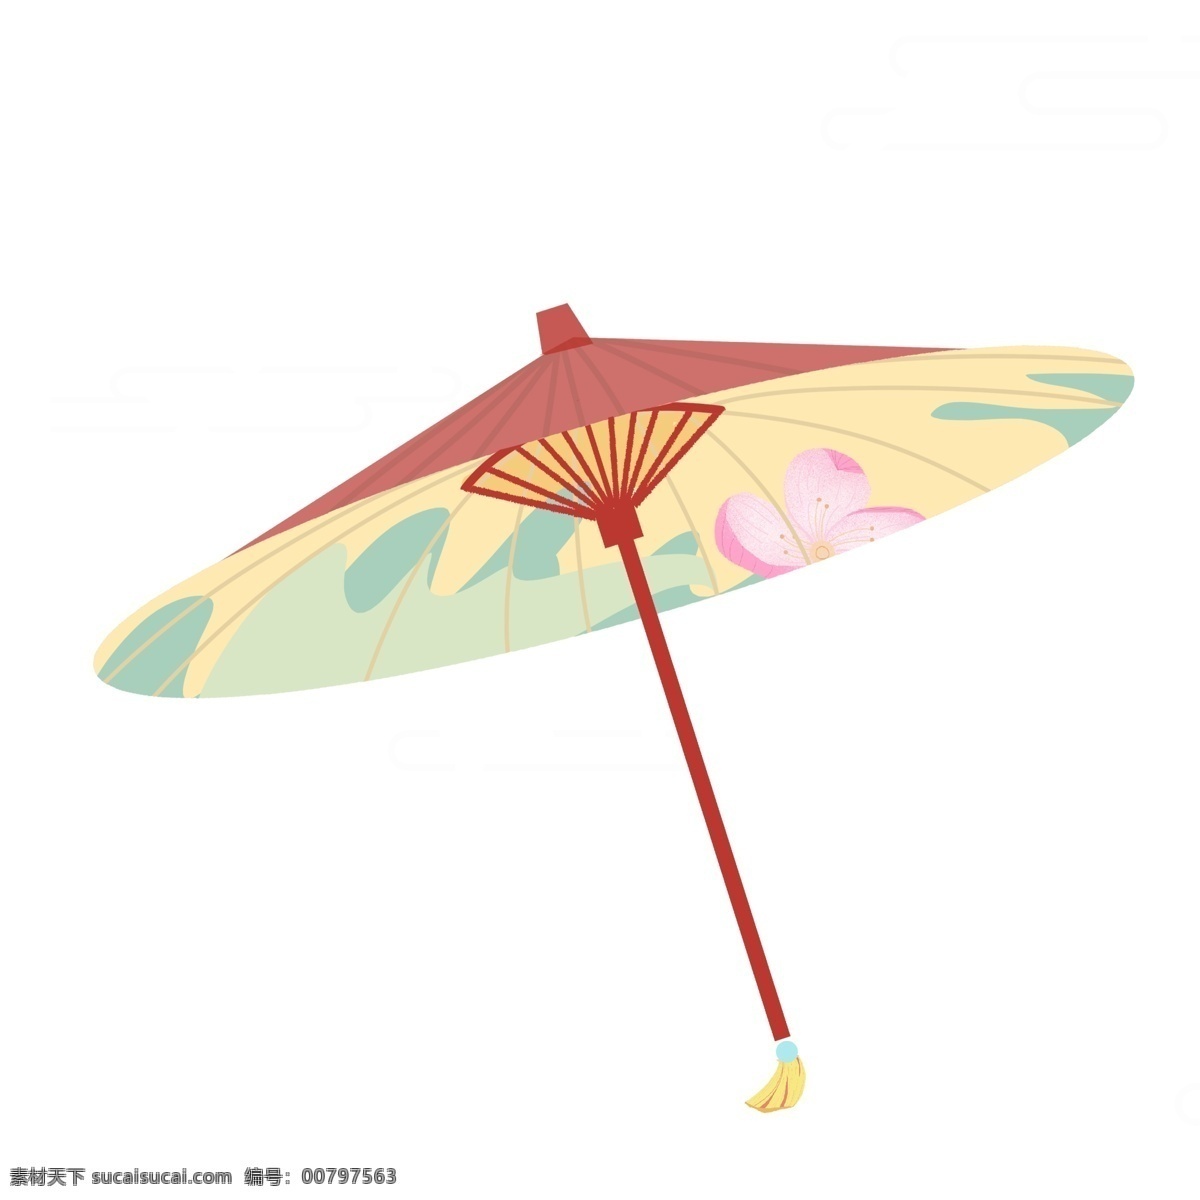 大气 油纸伞 元素 雨伞 传统 设计元素 简约 创意元素 花伞 手绘 手绘图案 手绘元素 psd元素